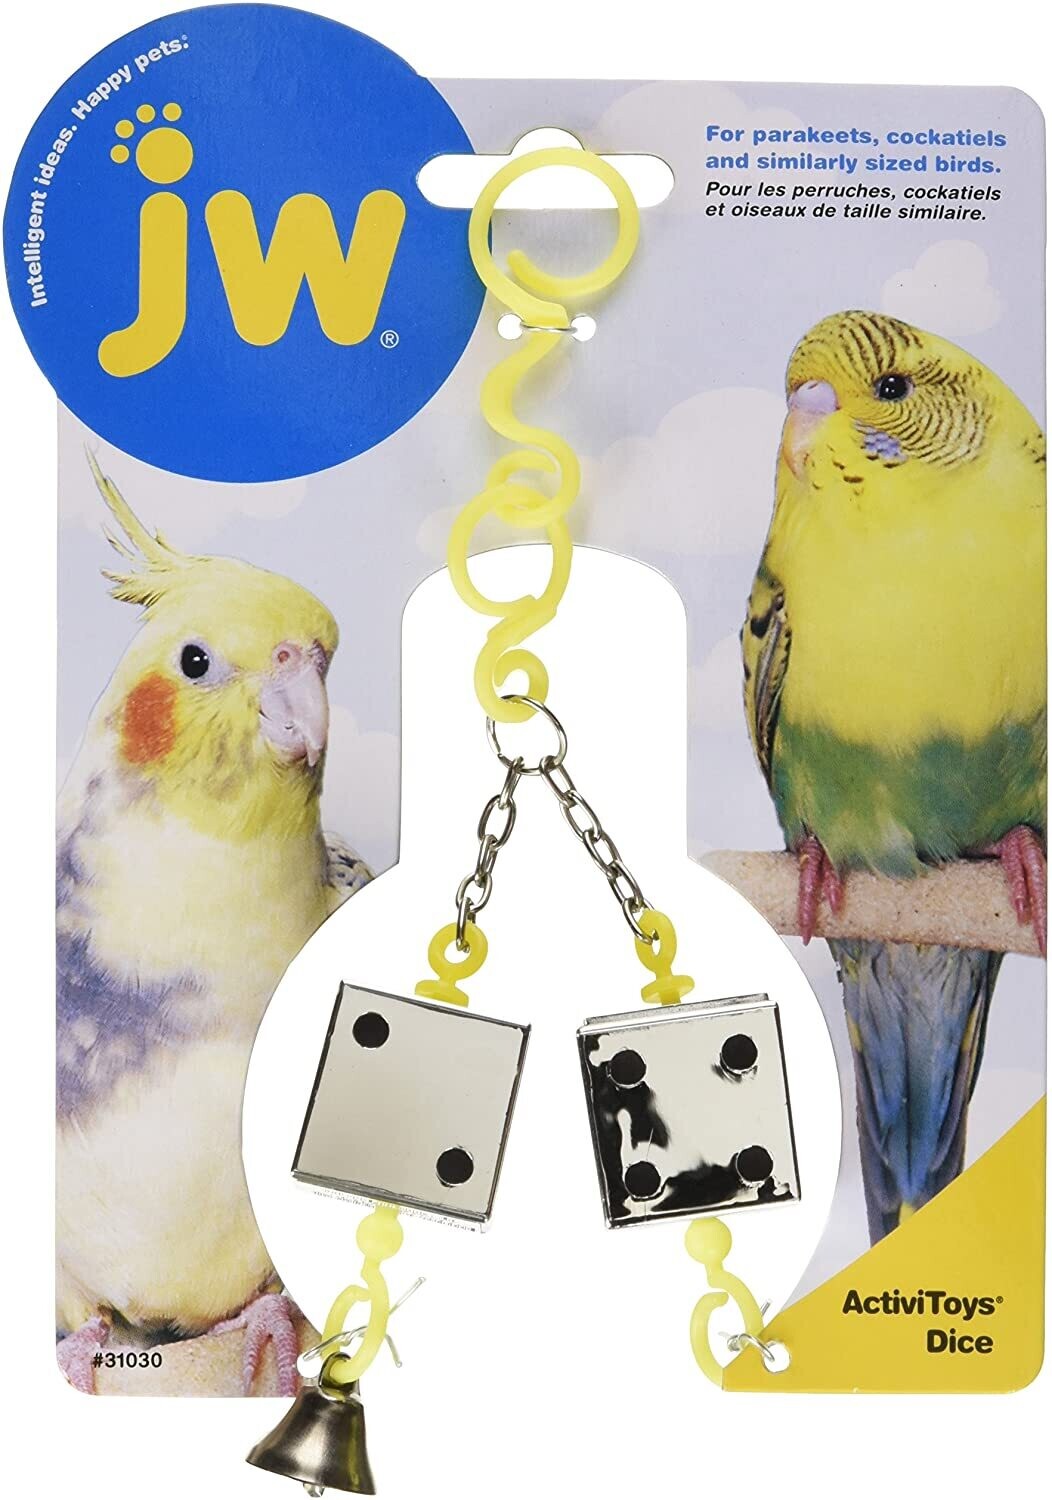 JW Bird - Dice